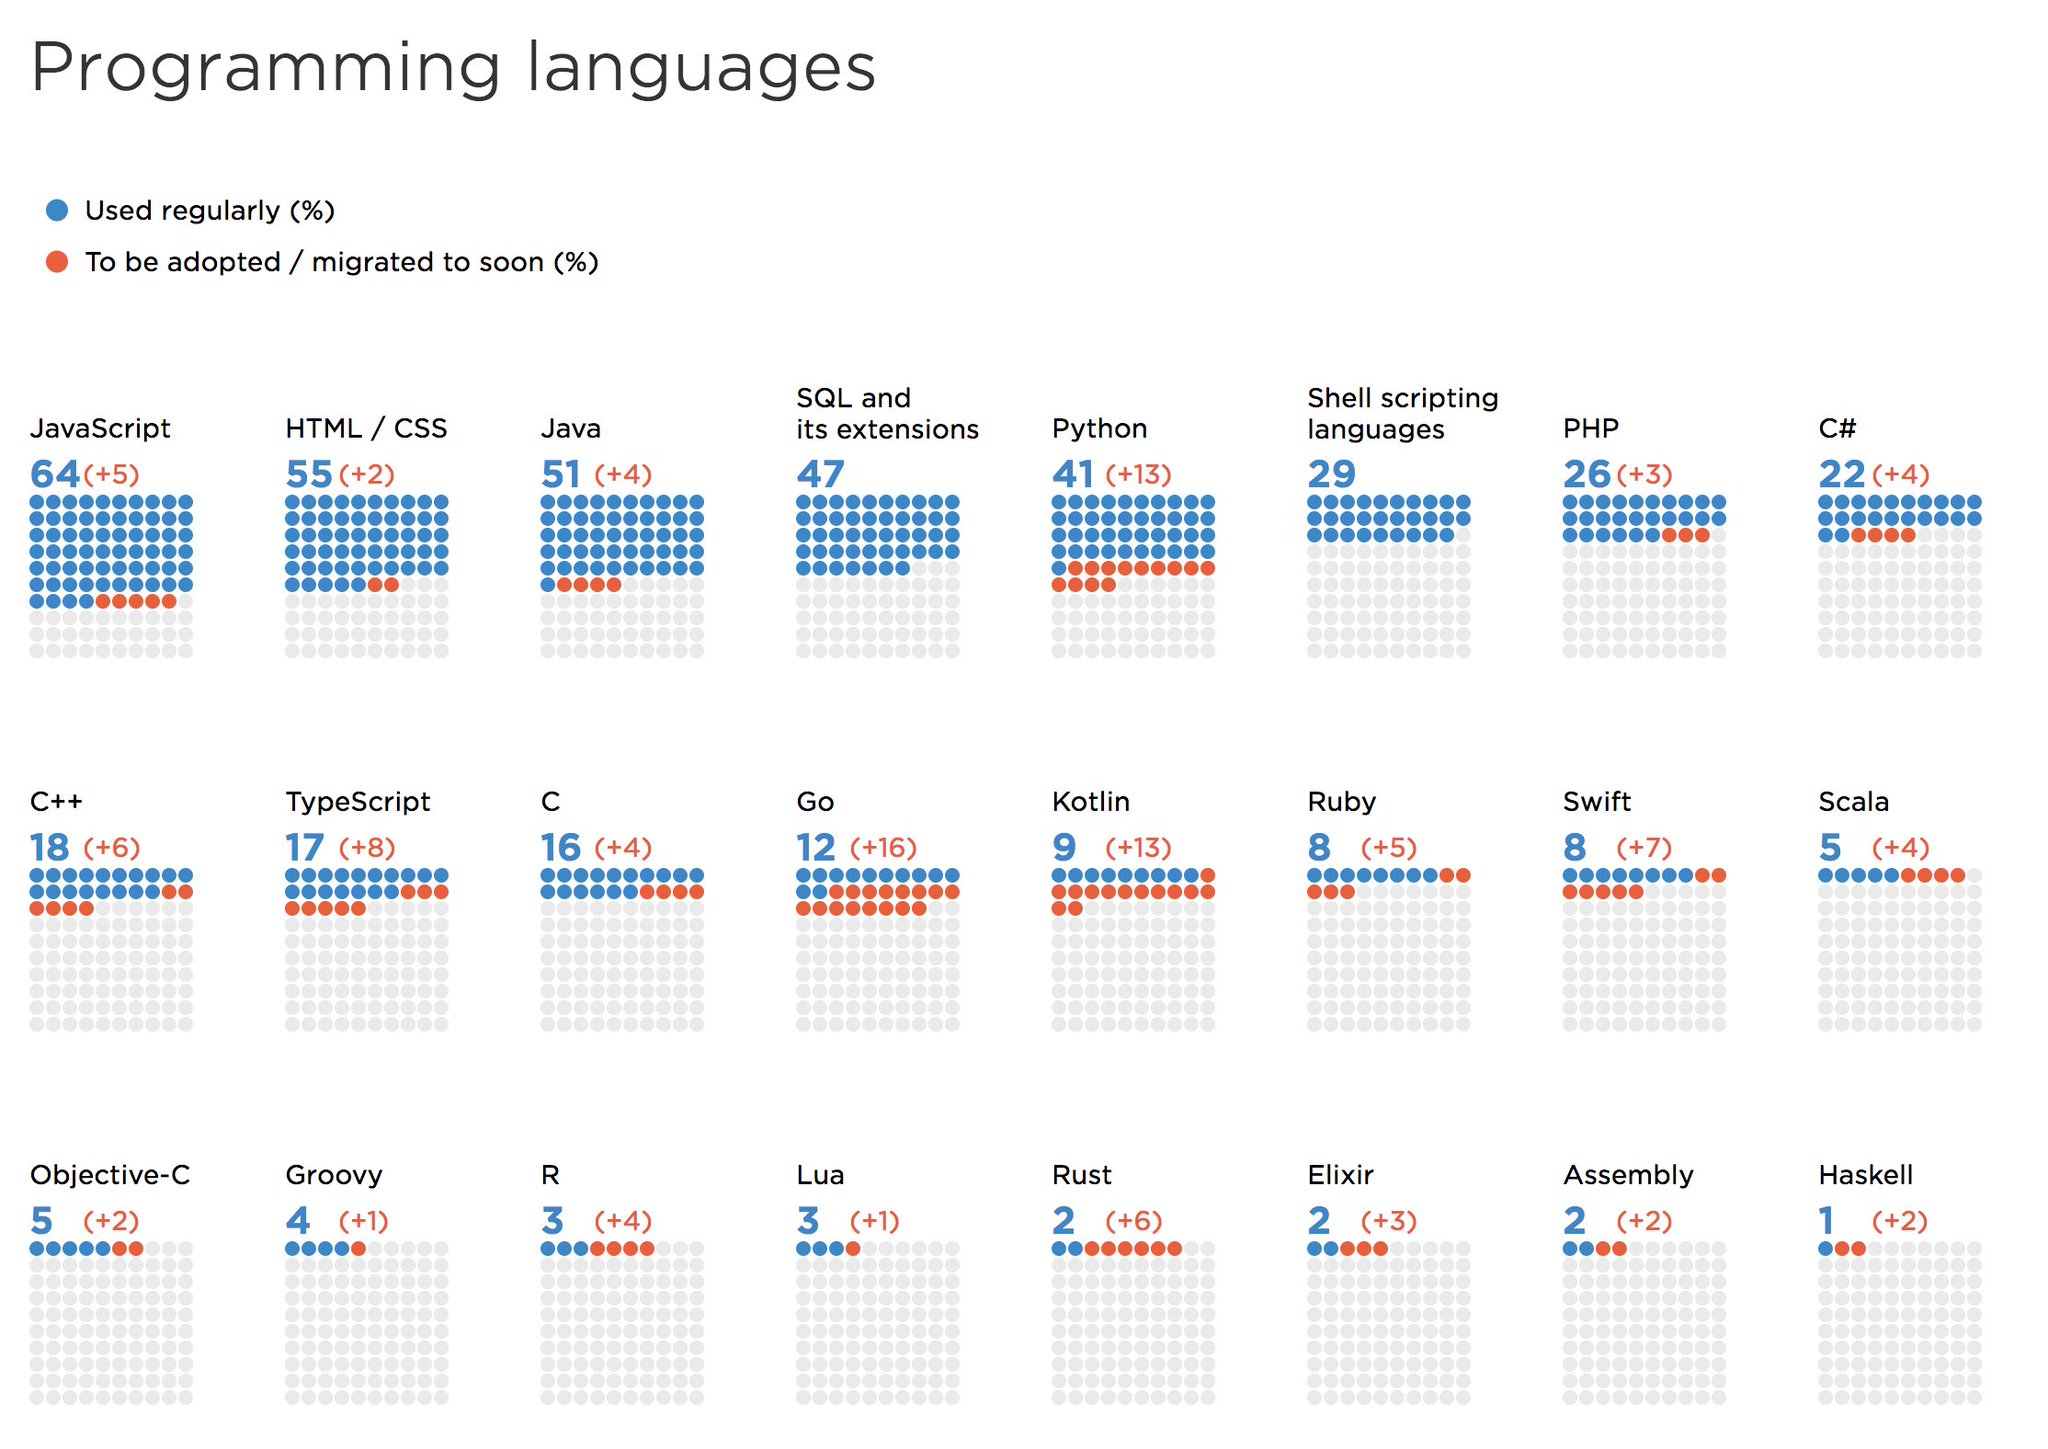 Lenguajes de programación más populares (presentes y futuros) según JetBrains